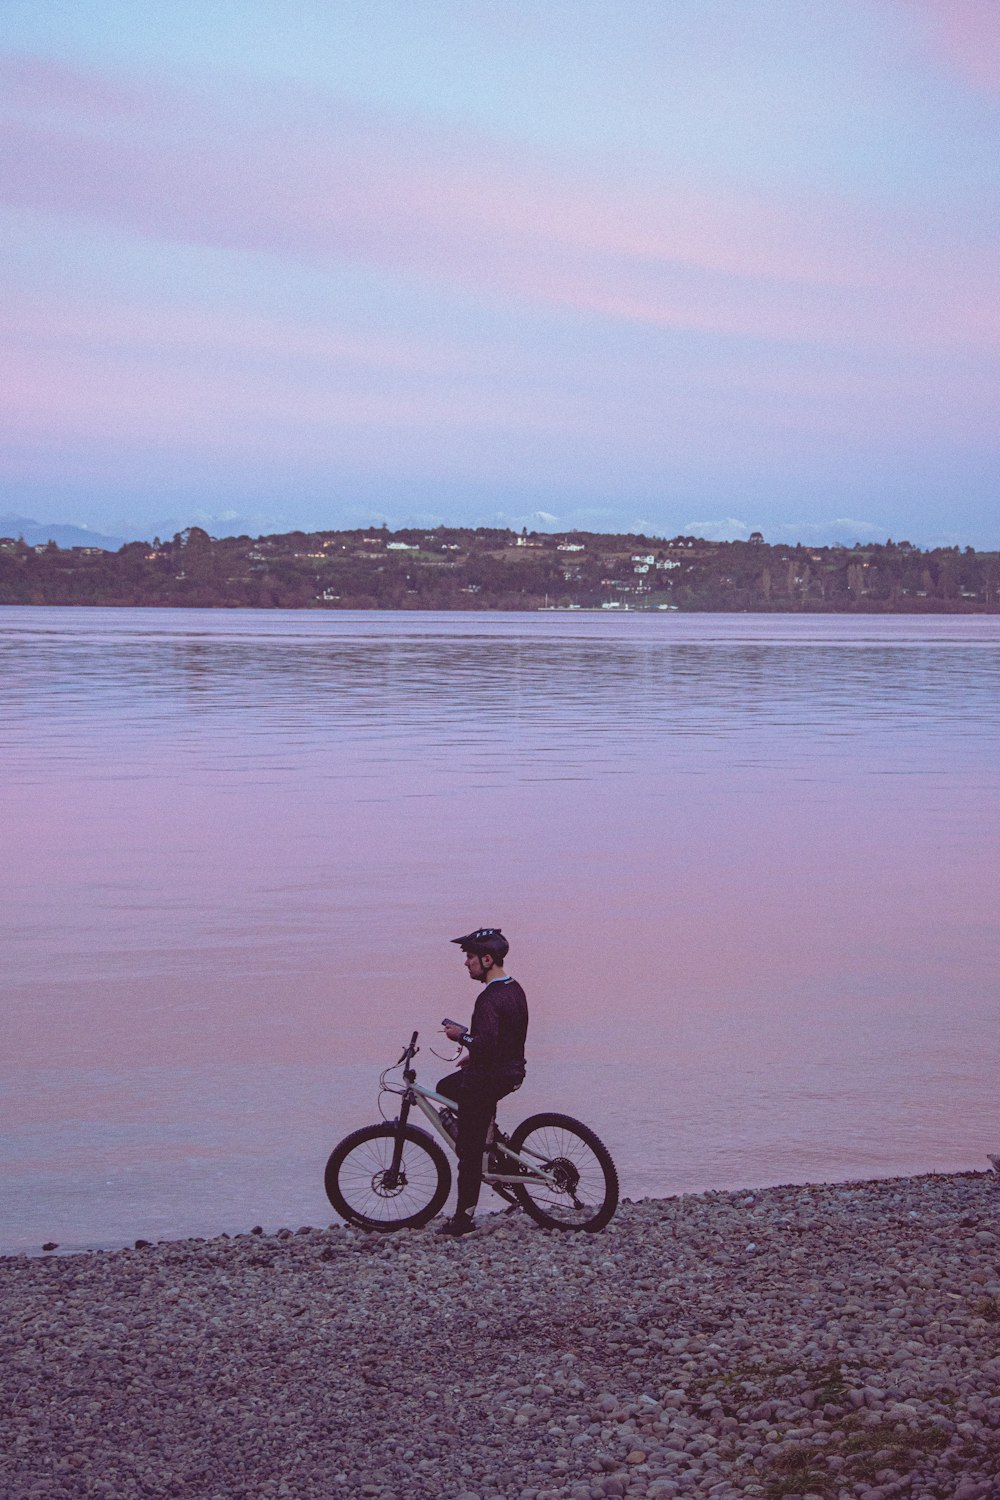 Man riding bicycle on beach during daytime photo – Free Bike Image on  Unsplash